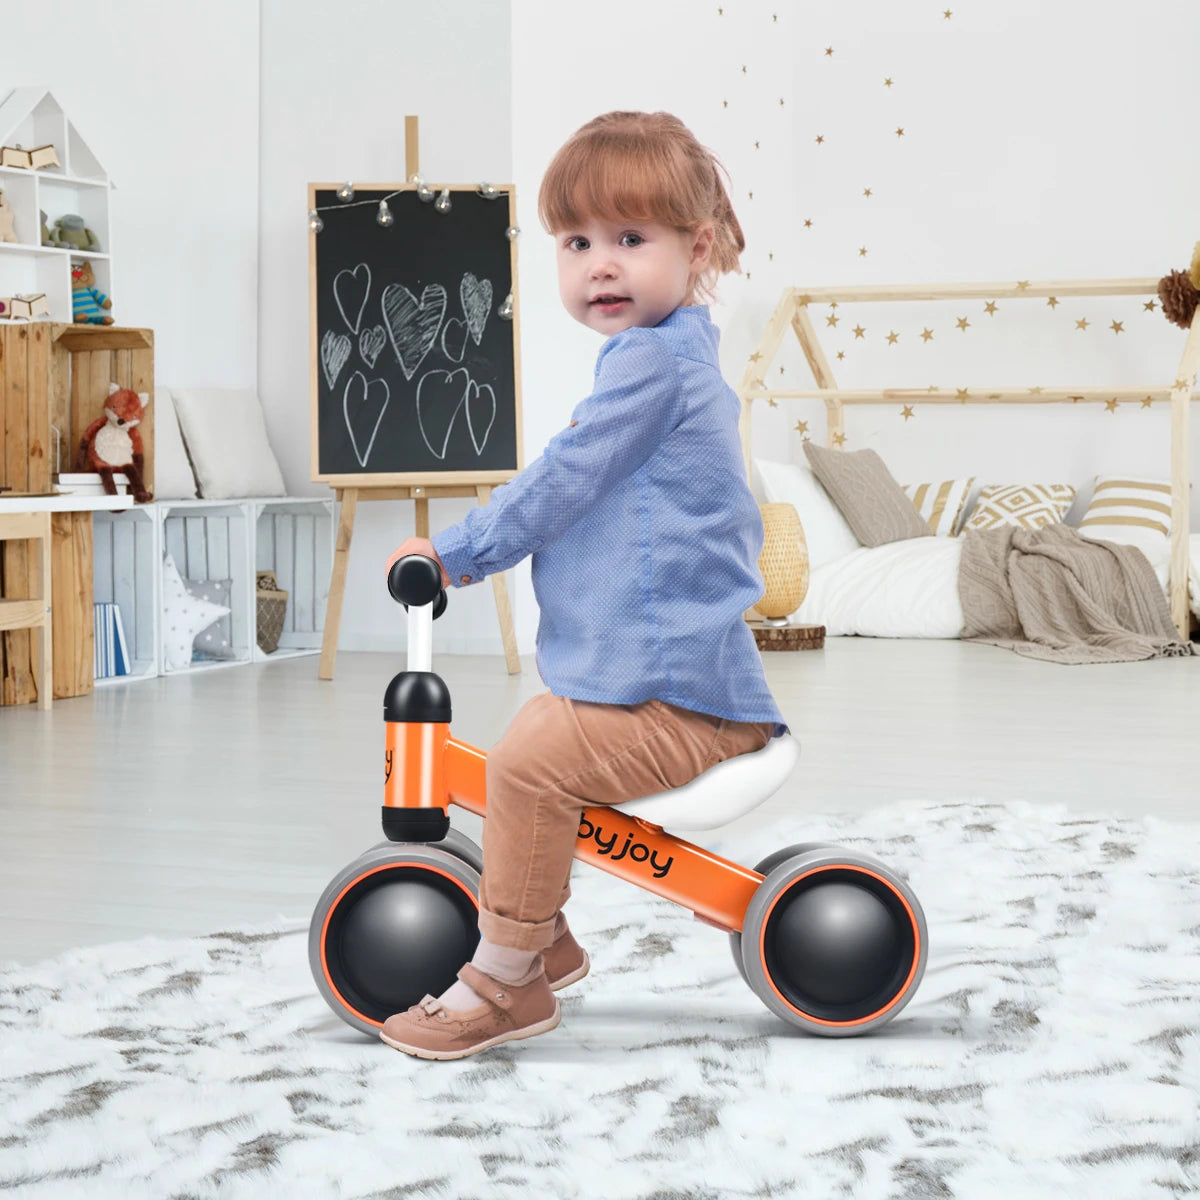 Toddler No-Pedal Balance Bike